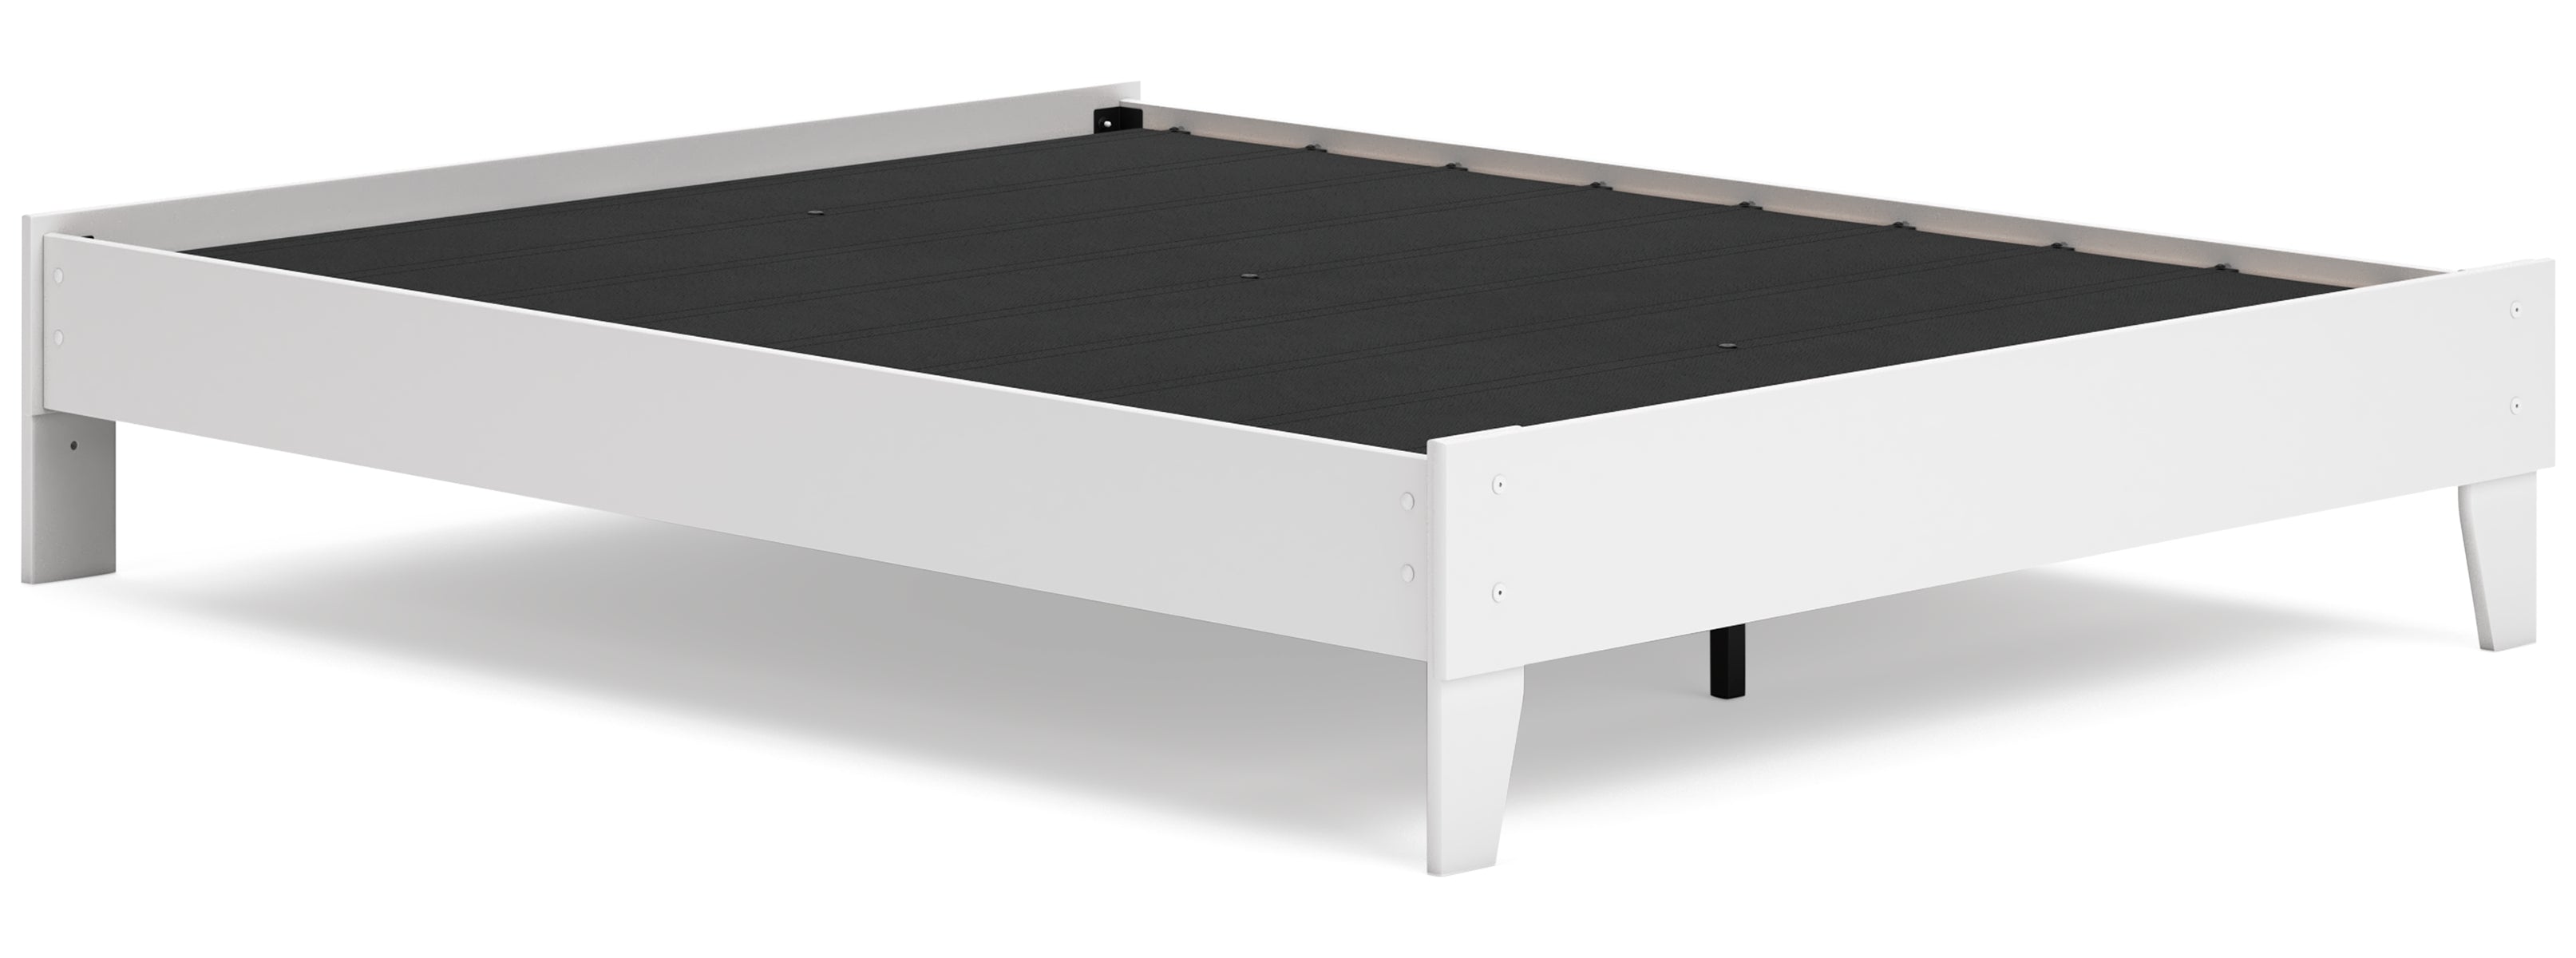 Socalle Queen Panel Platform Bed